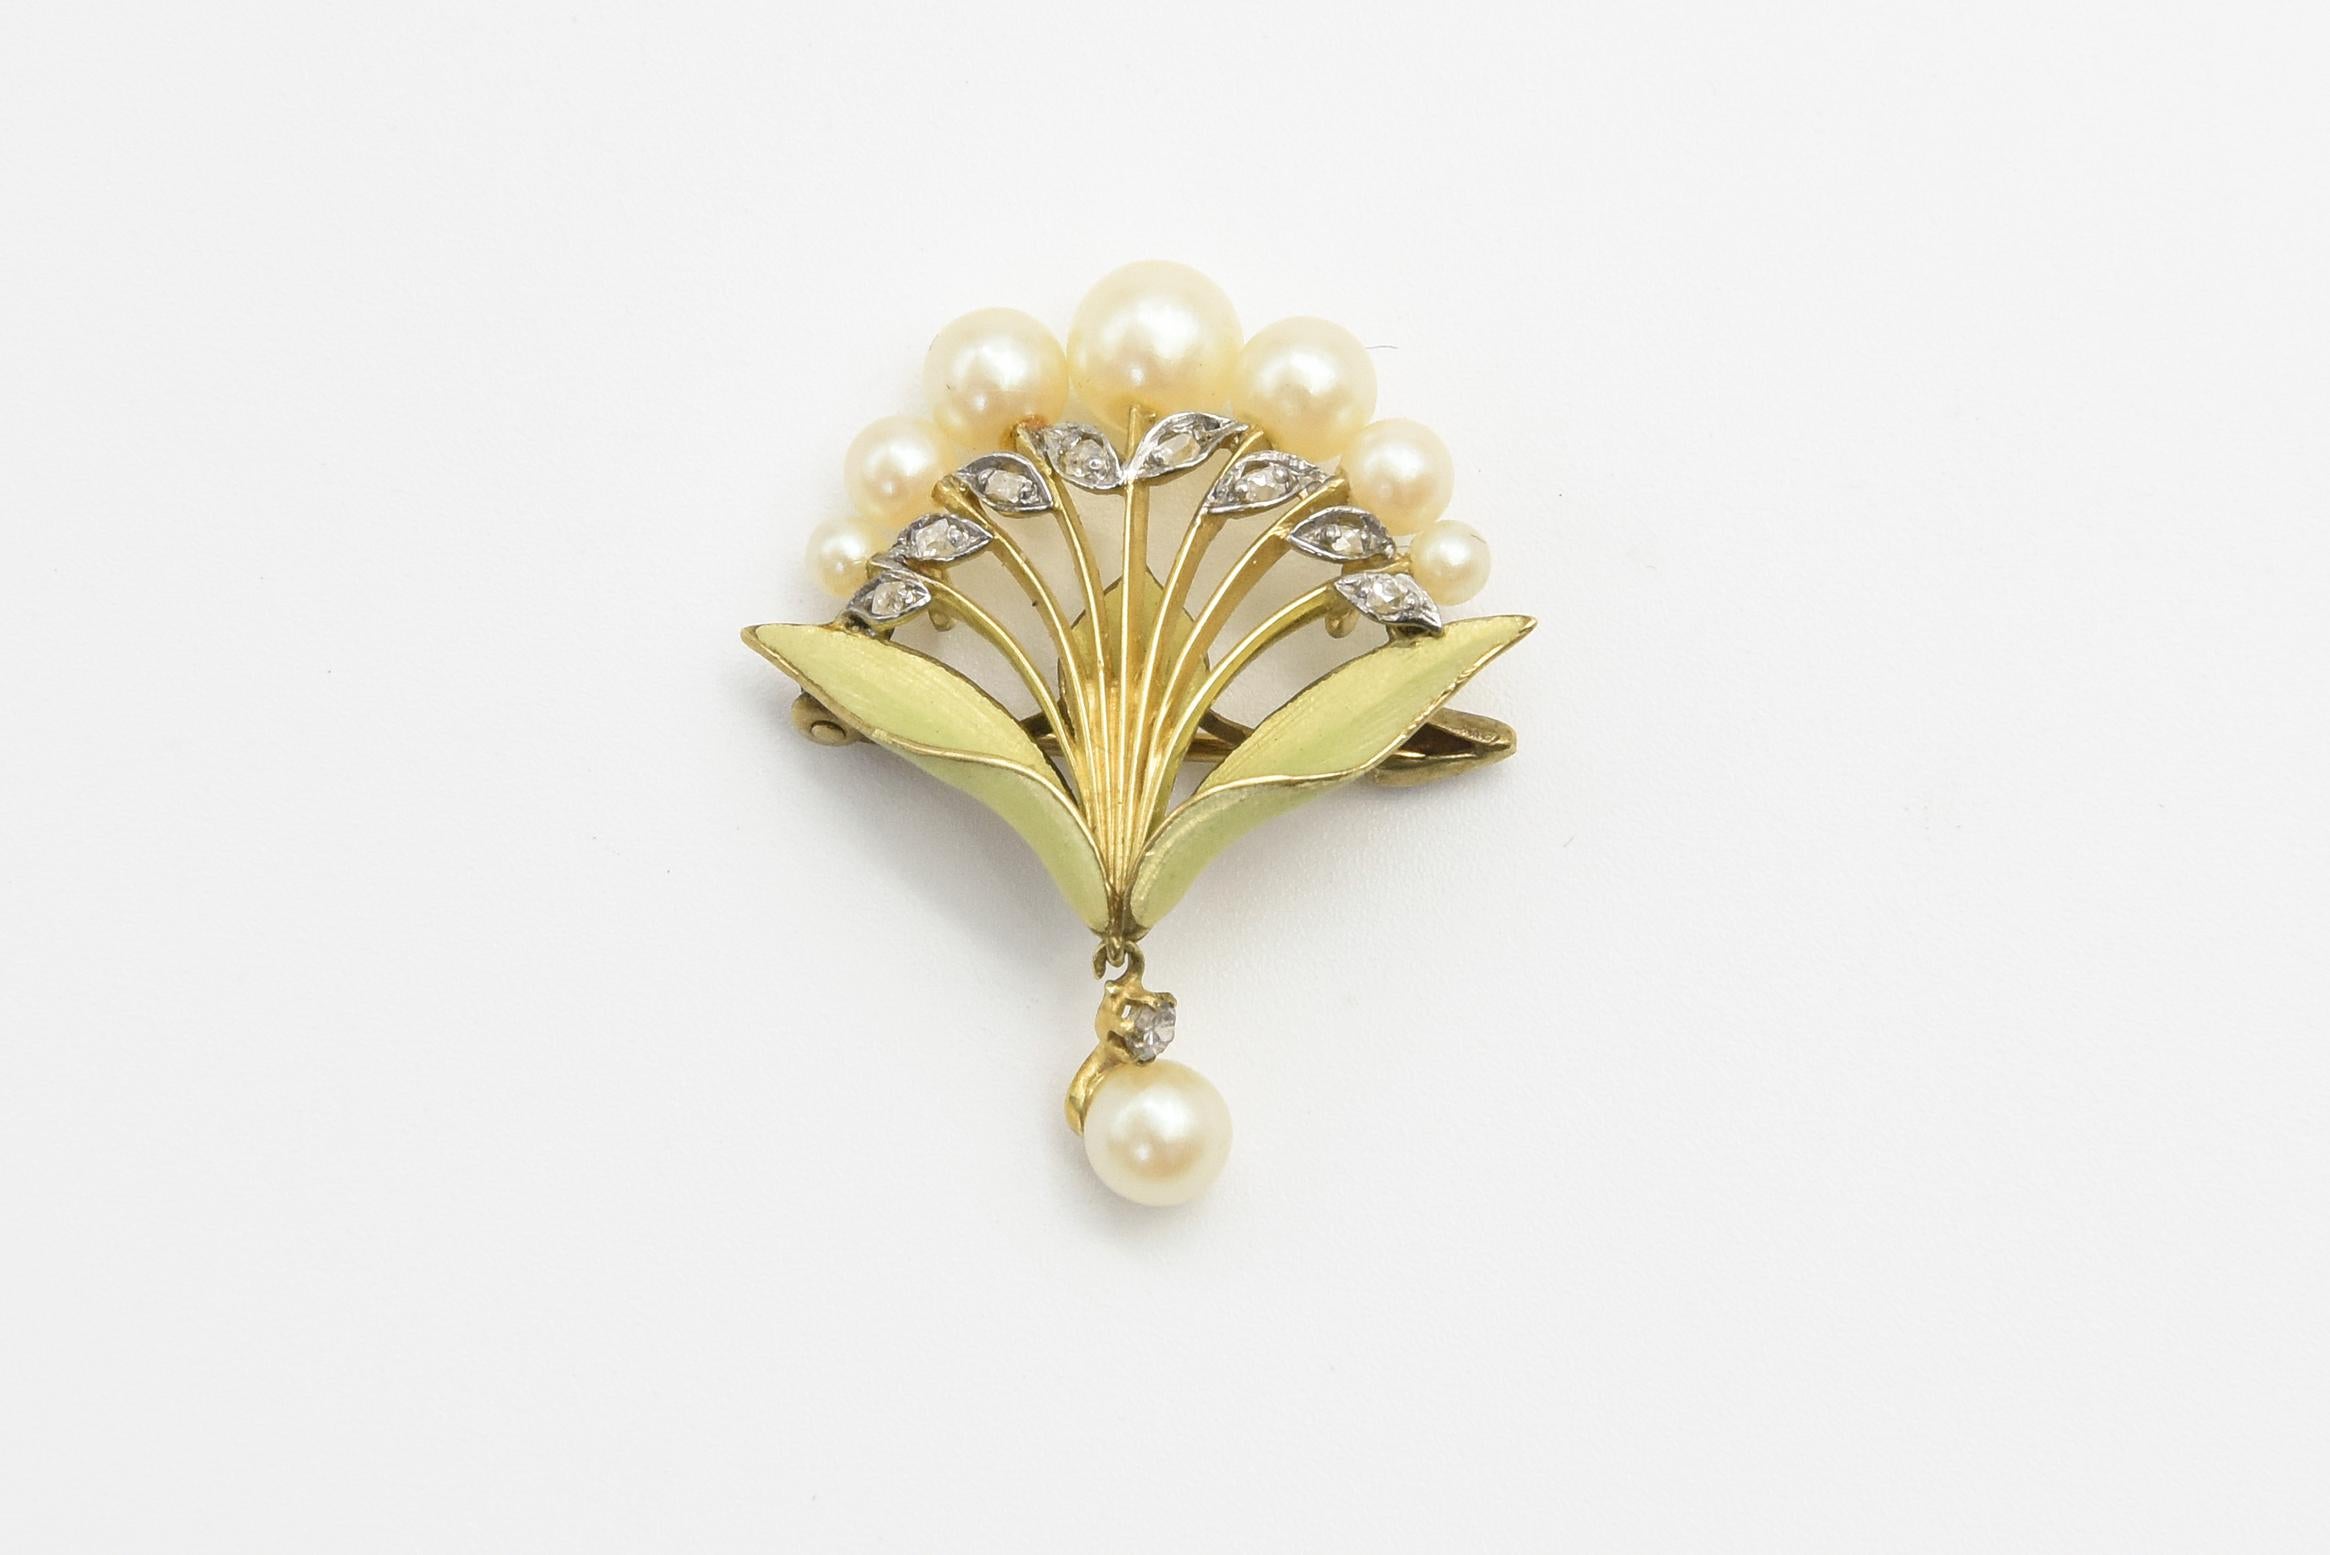 Wunderschöne Jugendstil-Emaille-Brosche im Stil einer Blumenlilie mit sieben graduierten Perlen auf einem Stiel aus Diamant und 18 Karat Gelbgold.  Die Brosche besteht aus zwei grünen Emailleblättern, die mit einem Diamanten und einer Perle